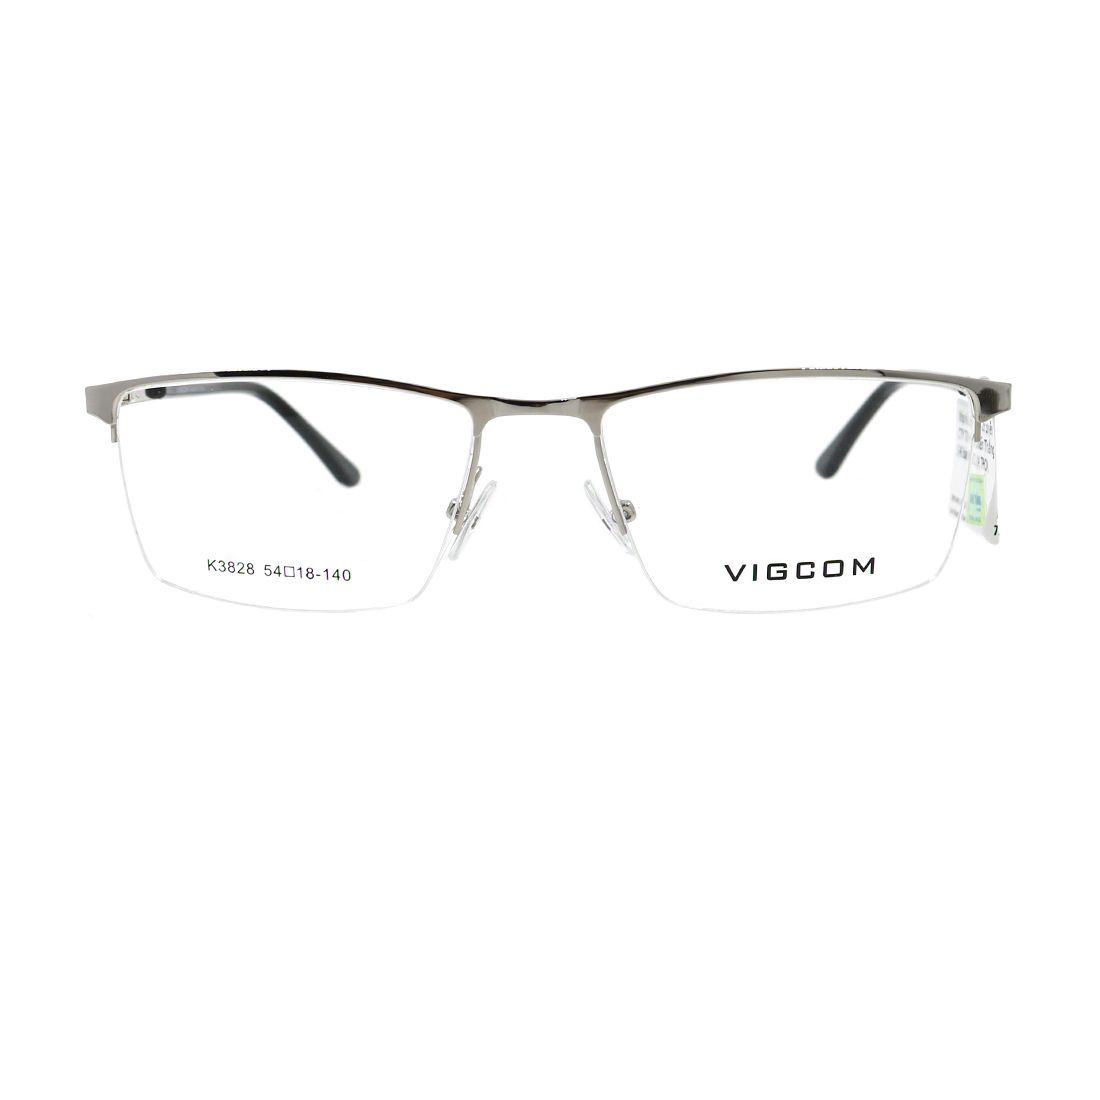  Gọng kính Vigcom VG3828 C3 